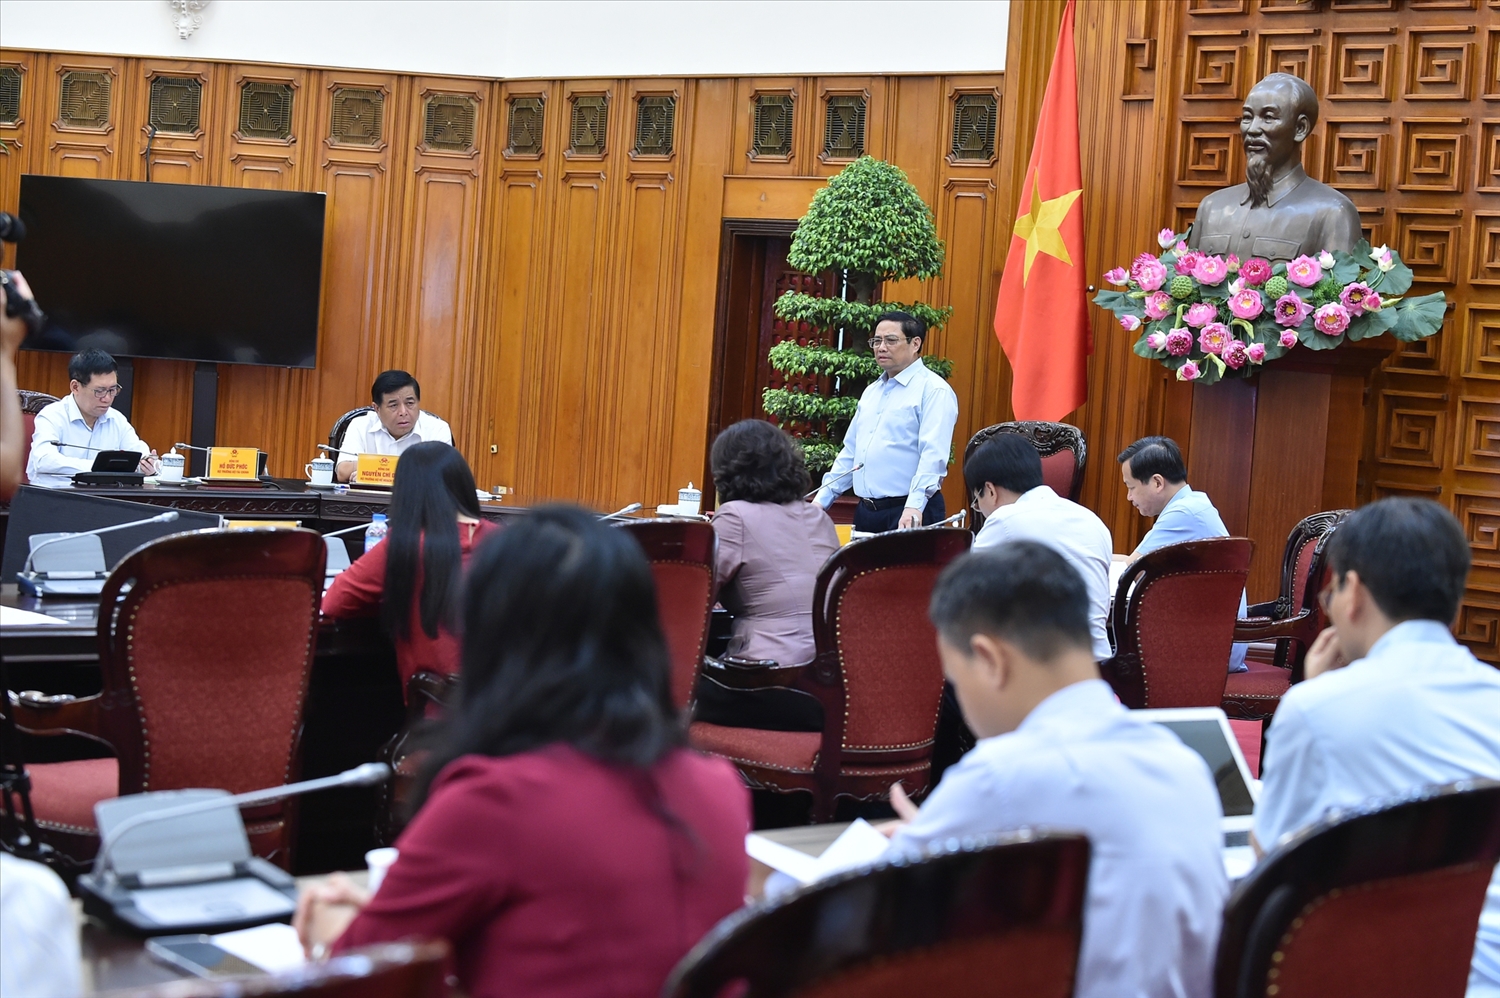 Thủ tướng Chính phủ yêu cầu chỉ đạo điều hành vĩ mô phải bảo đảm tính tổng thể, bài bản, khoa học, hiệu quả, hợp lý cả trước mắt và lâu dài - Ảnh: VGP/Quang Thương